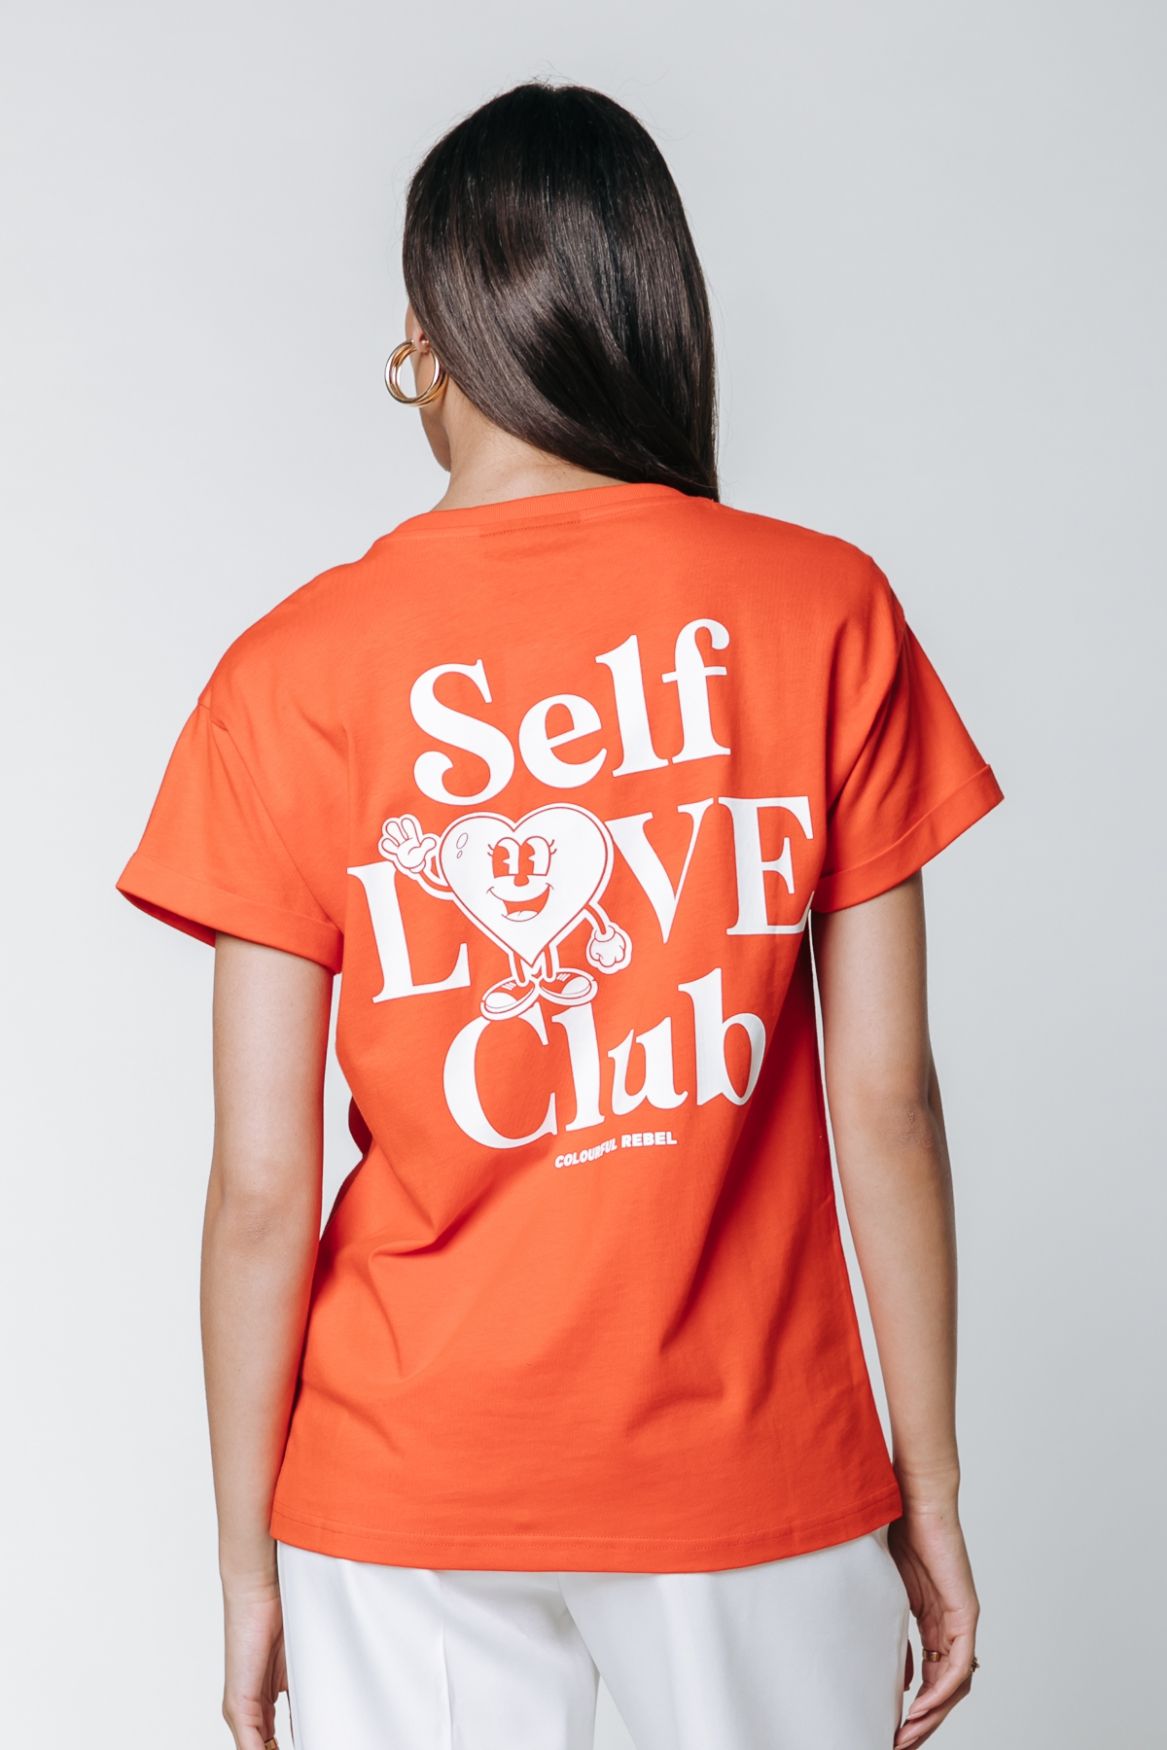 Colourful Rebel Self Love Club Boxy Tee 703 bright orange 00102905-EKA26011600000006